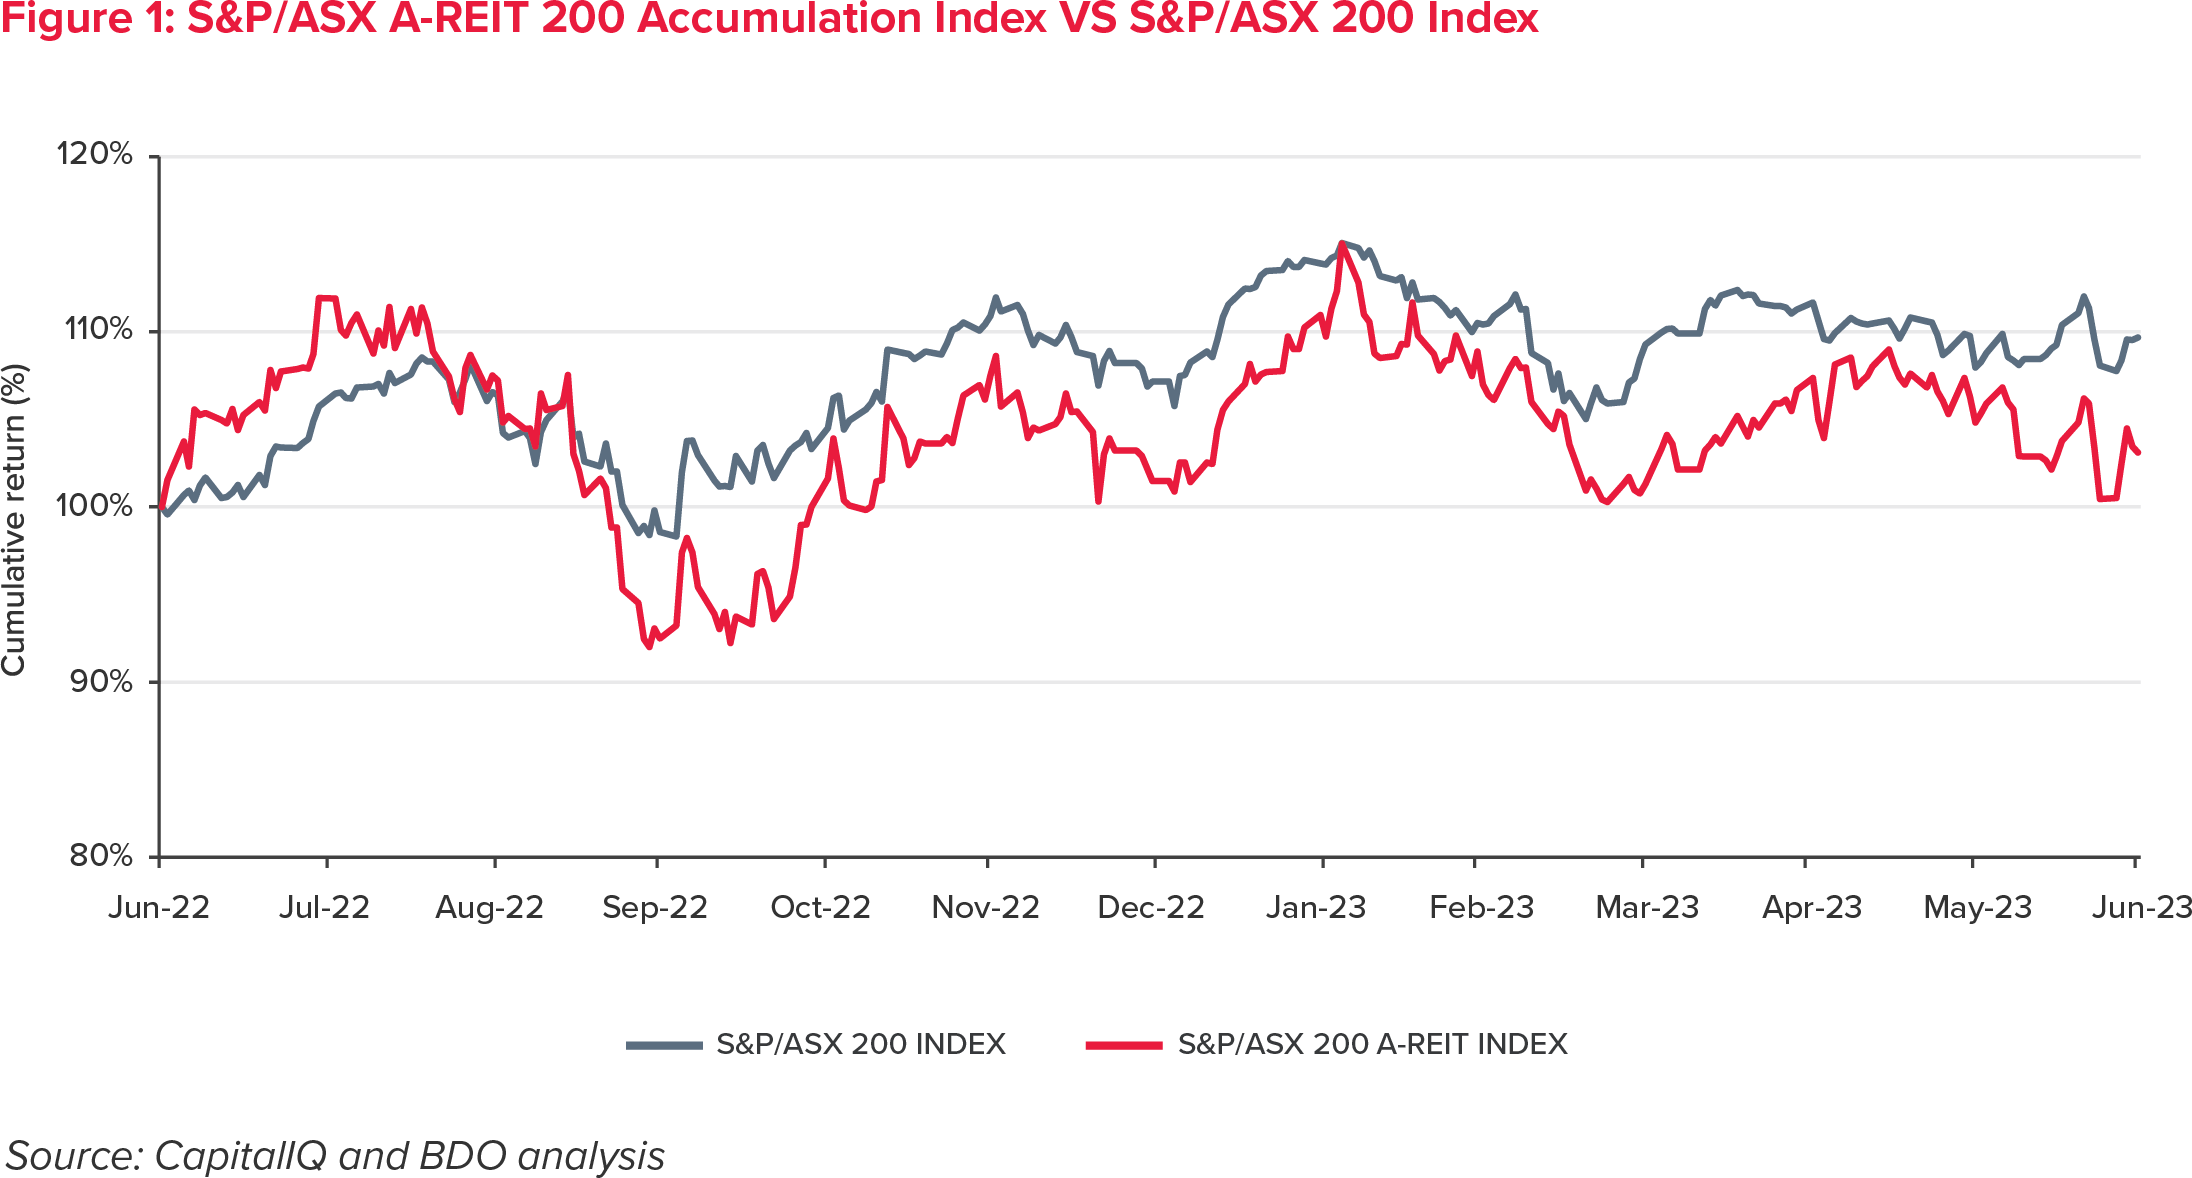 S&P/ASX A-REIT 200 Accumulation Index VS S&P/ASX 200 Index